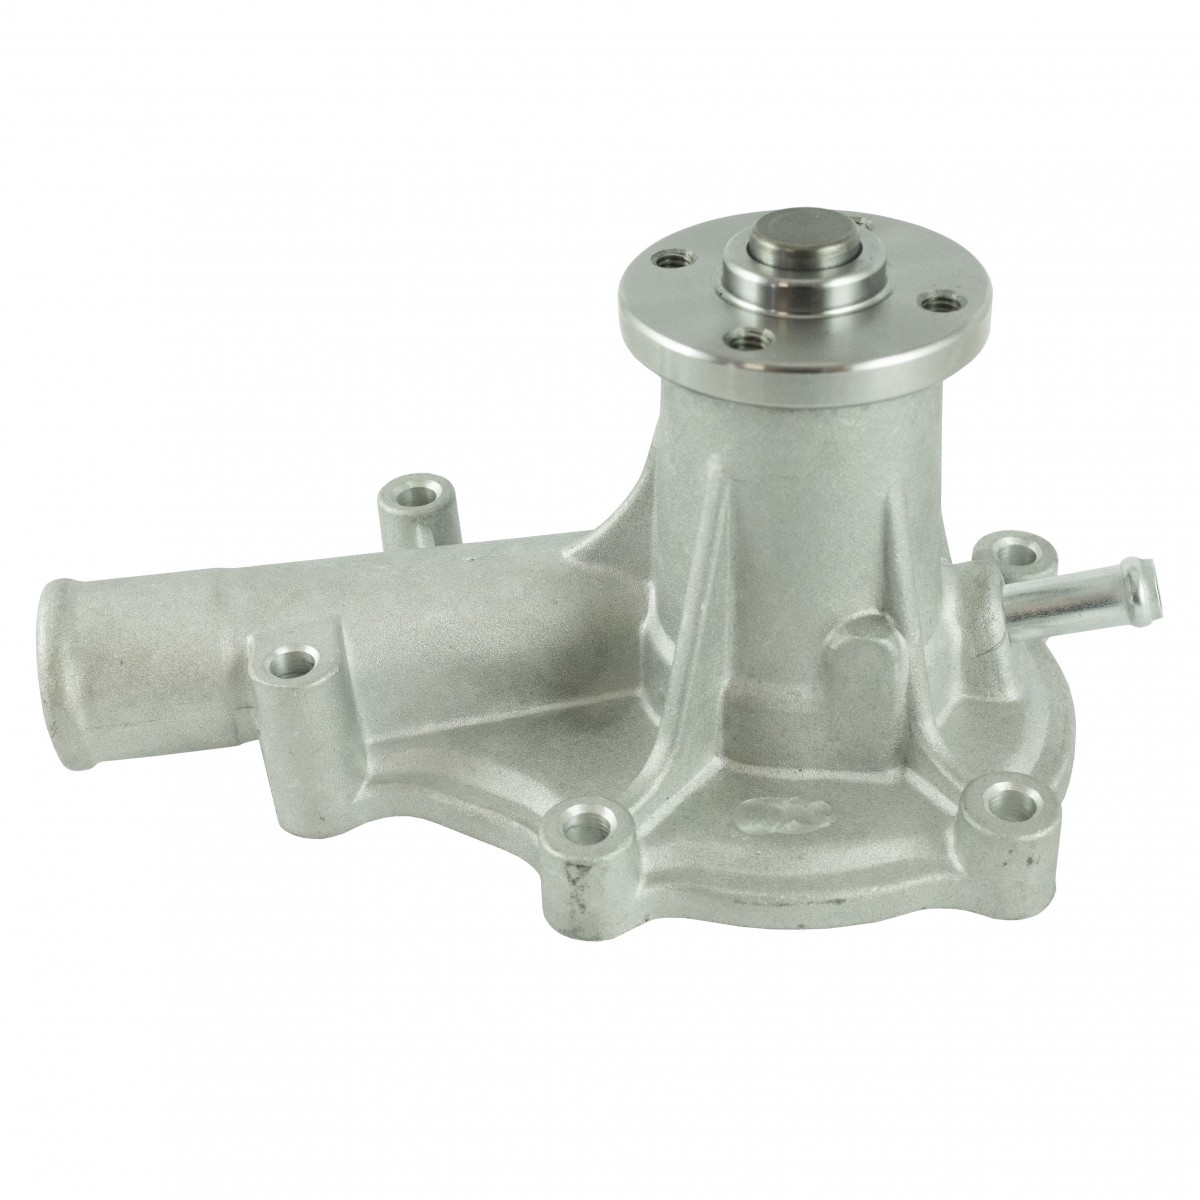 Water pump 16241-73034 impeller 59 mm, Kubota V1505, D905